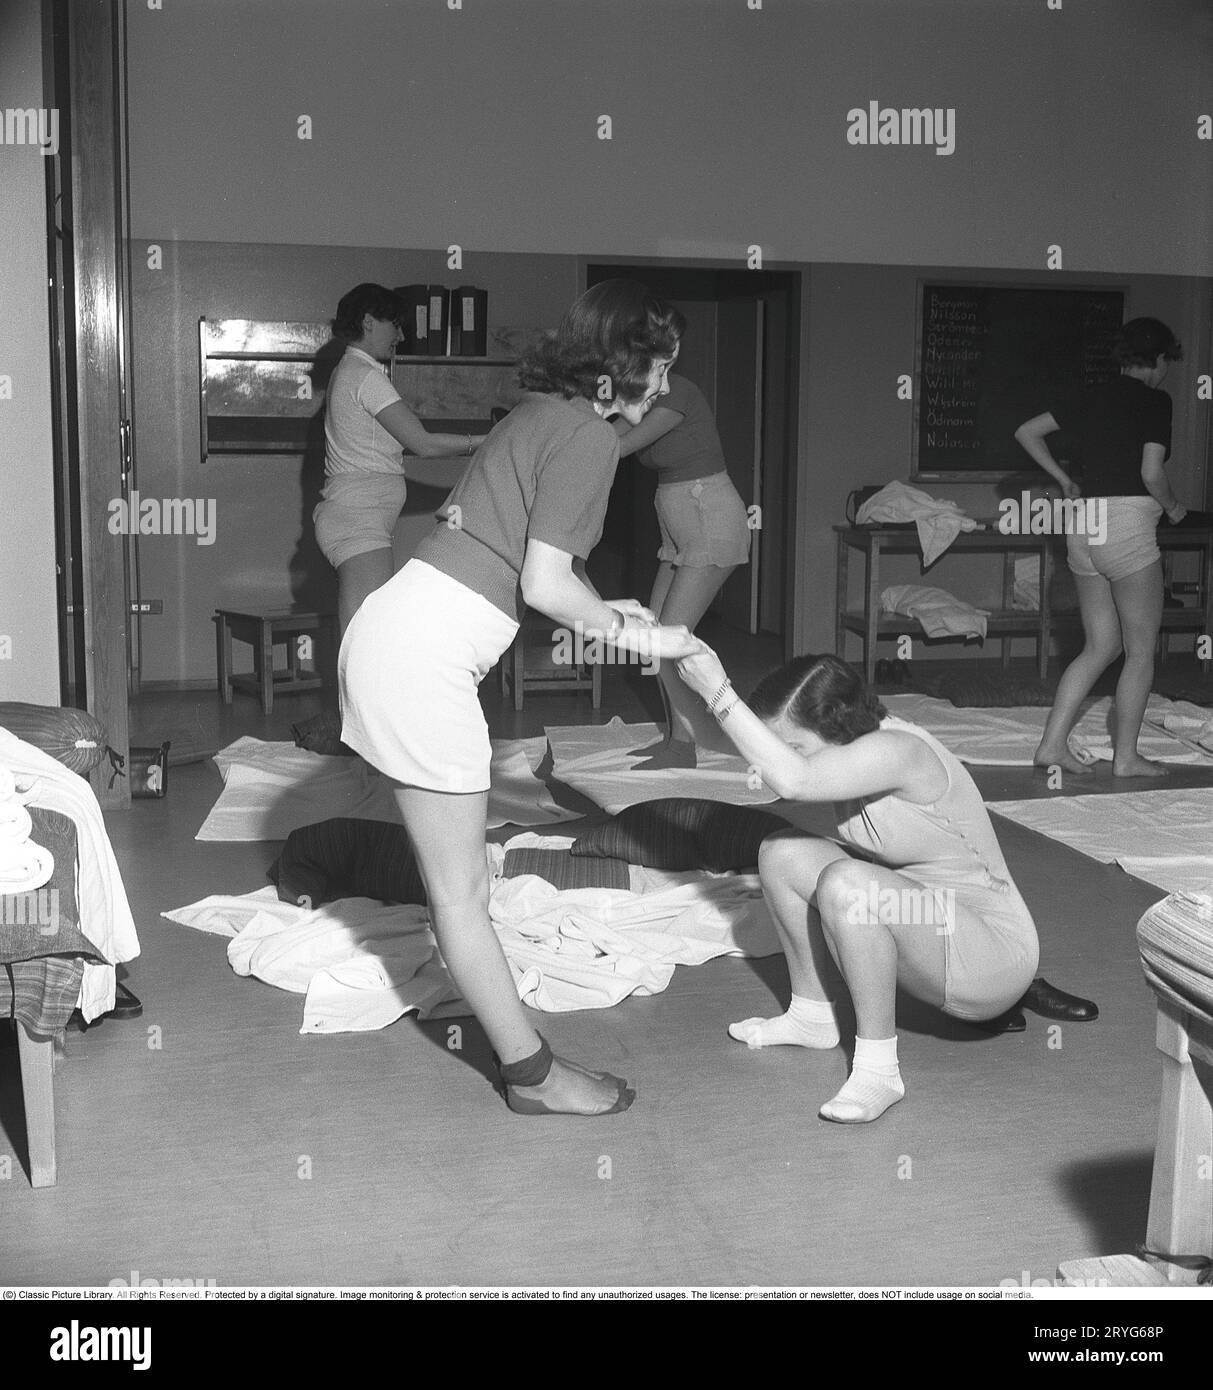 Gymnastik in der Vergangenheit. In einer Turnhalle kniet eine Gruppe von Frauen und dehnt ihre Arme in einer Bewegung. Junge Frauen machen eine Pause von der Arbeit und turnen während der Arbeitszeit. Bürogymnastik war eine moderne Erfindung in den 1940er Jahren, als die Gesundheitsfürsorge für Mitarbeiter begann, umgesetzt zu werden. Schweden 1949. Kristoffersson ref AX72-5 Stockfoto